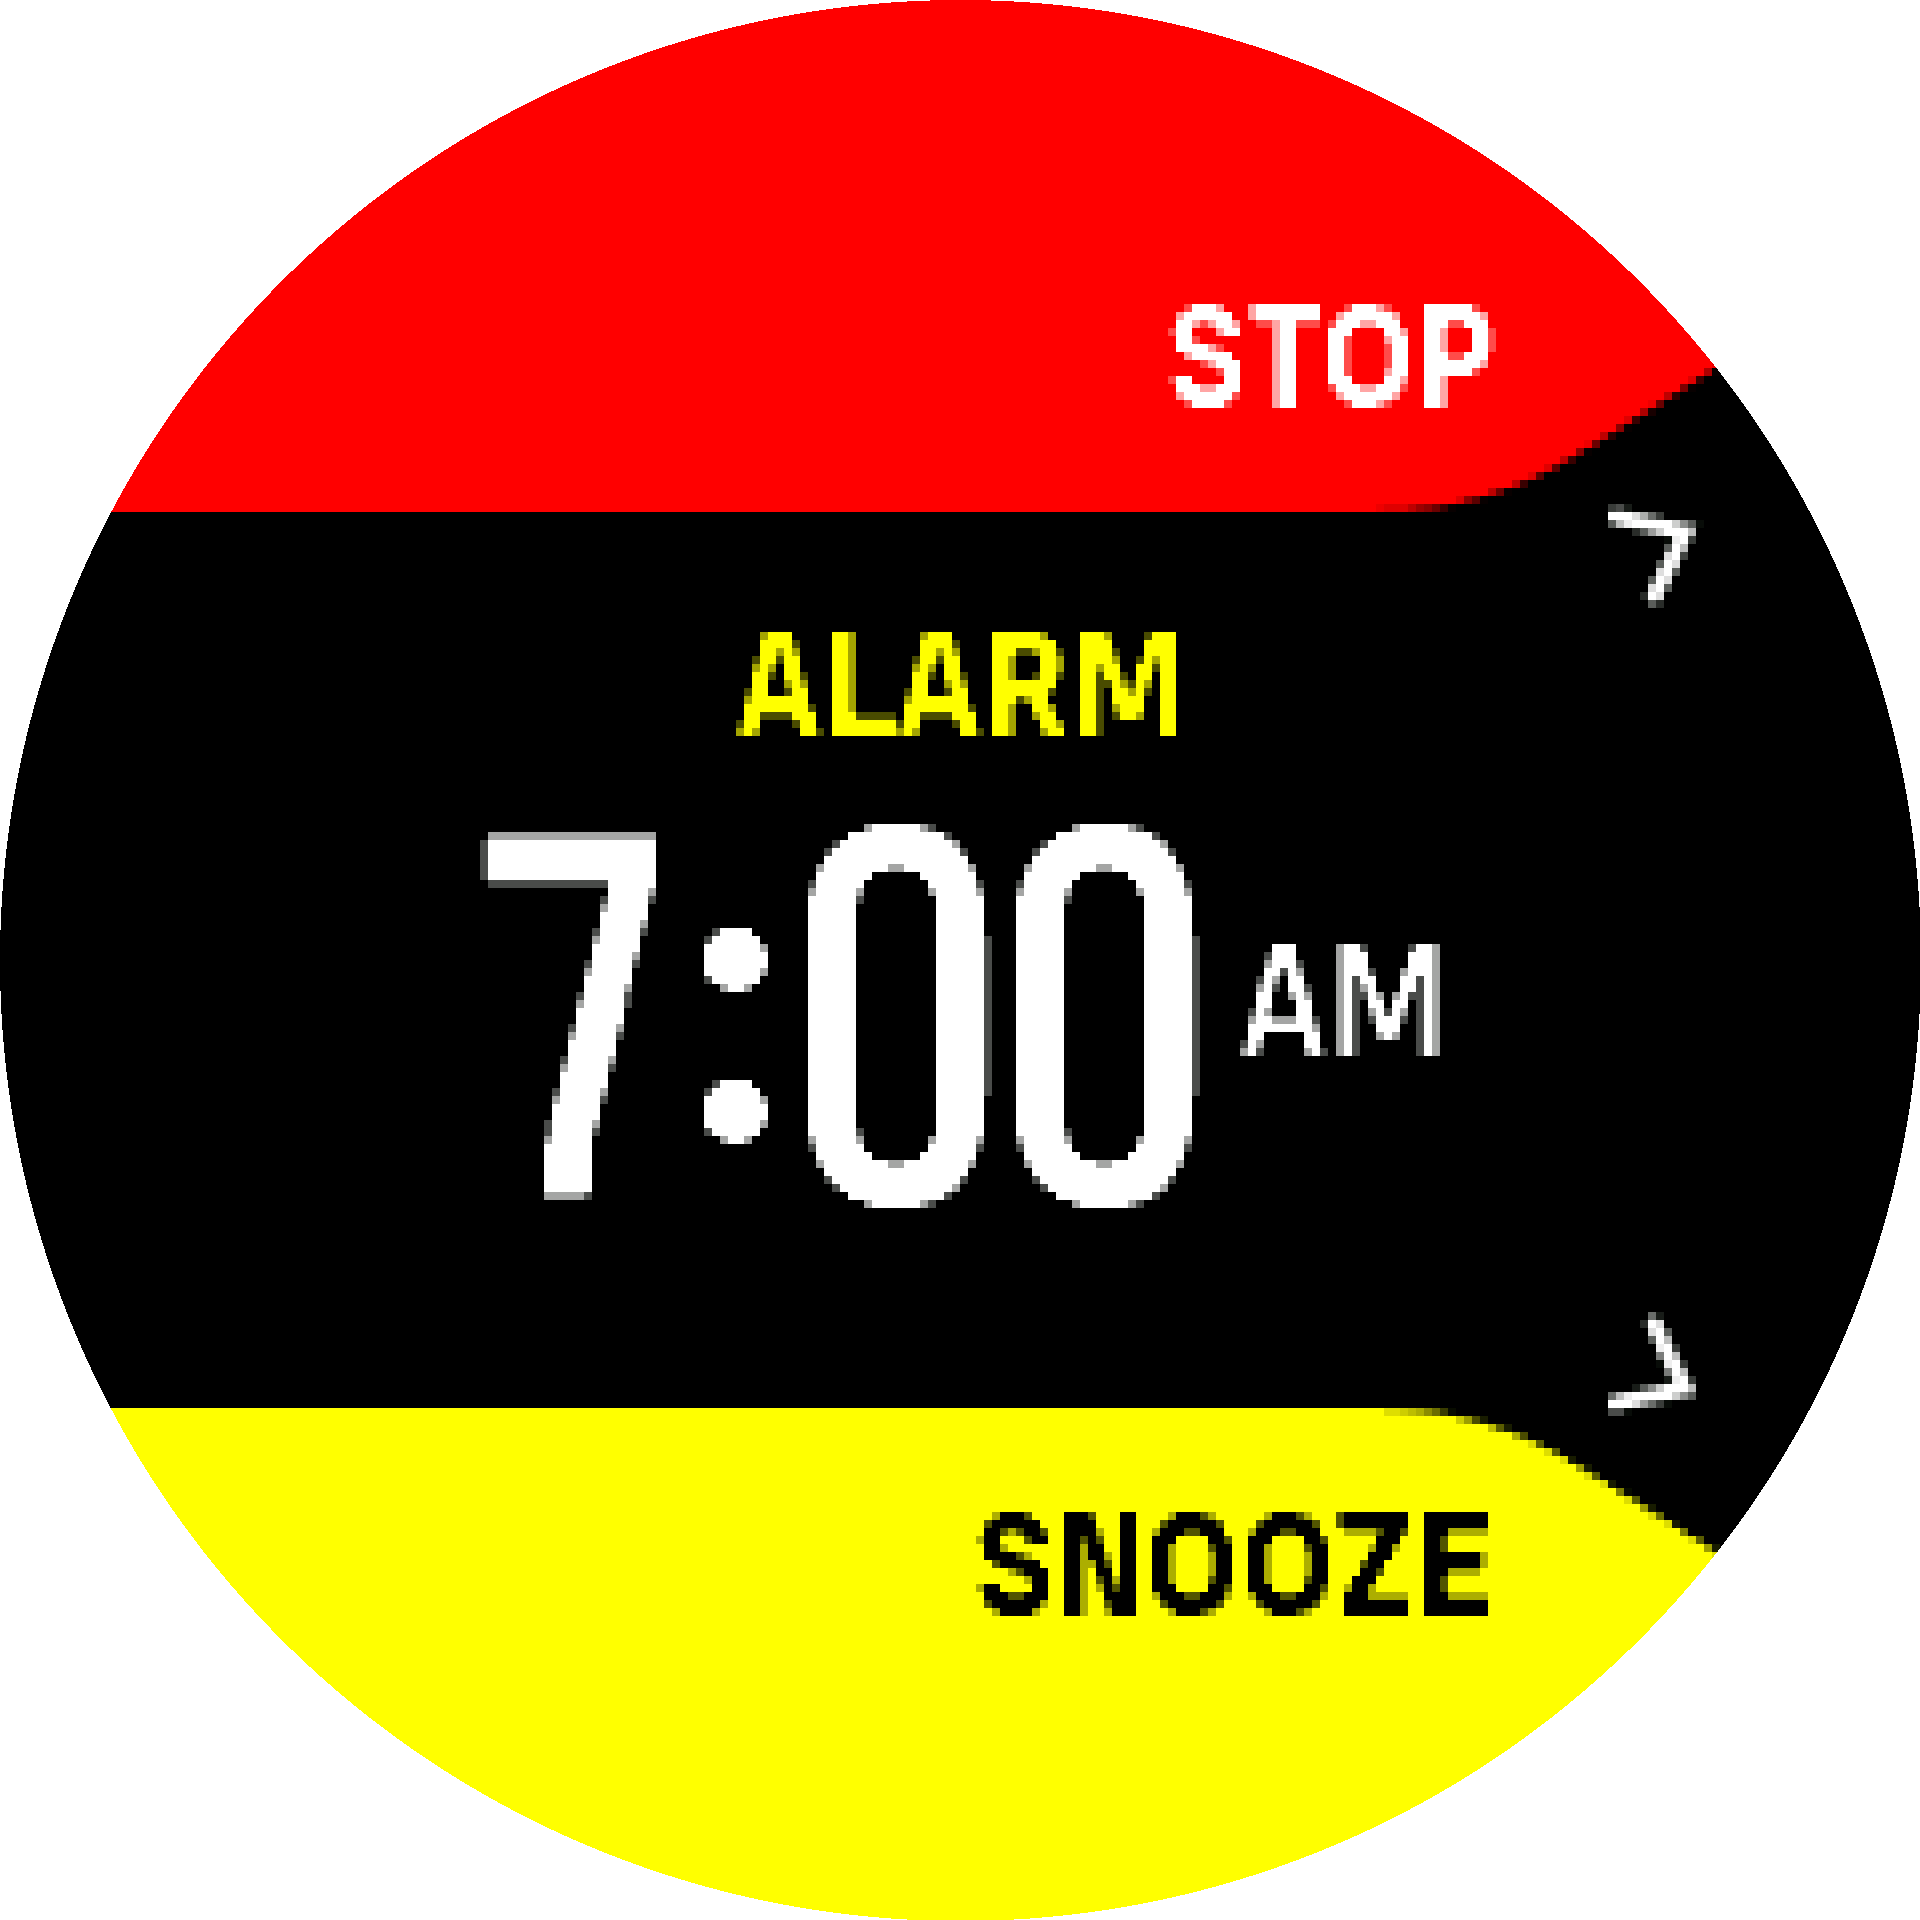 Alarm dismiss snooze S9PP